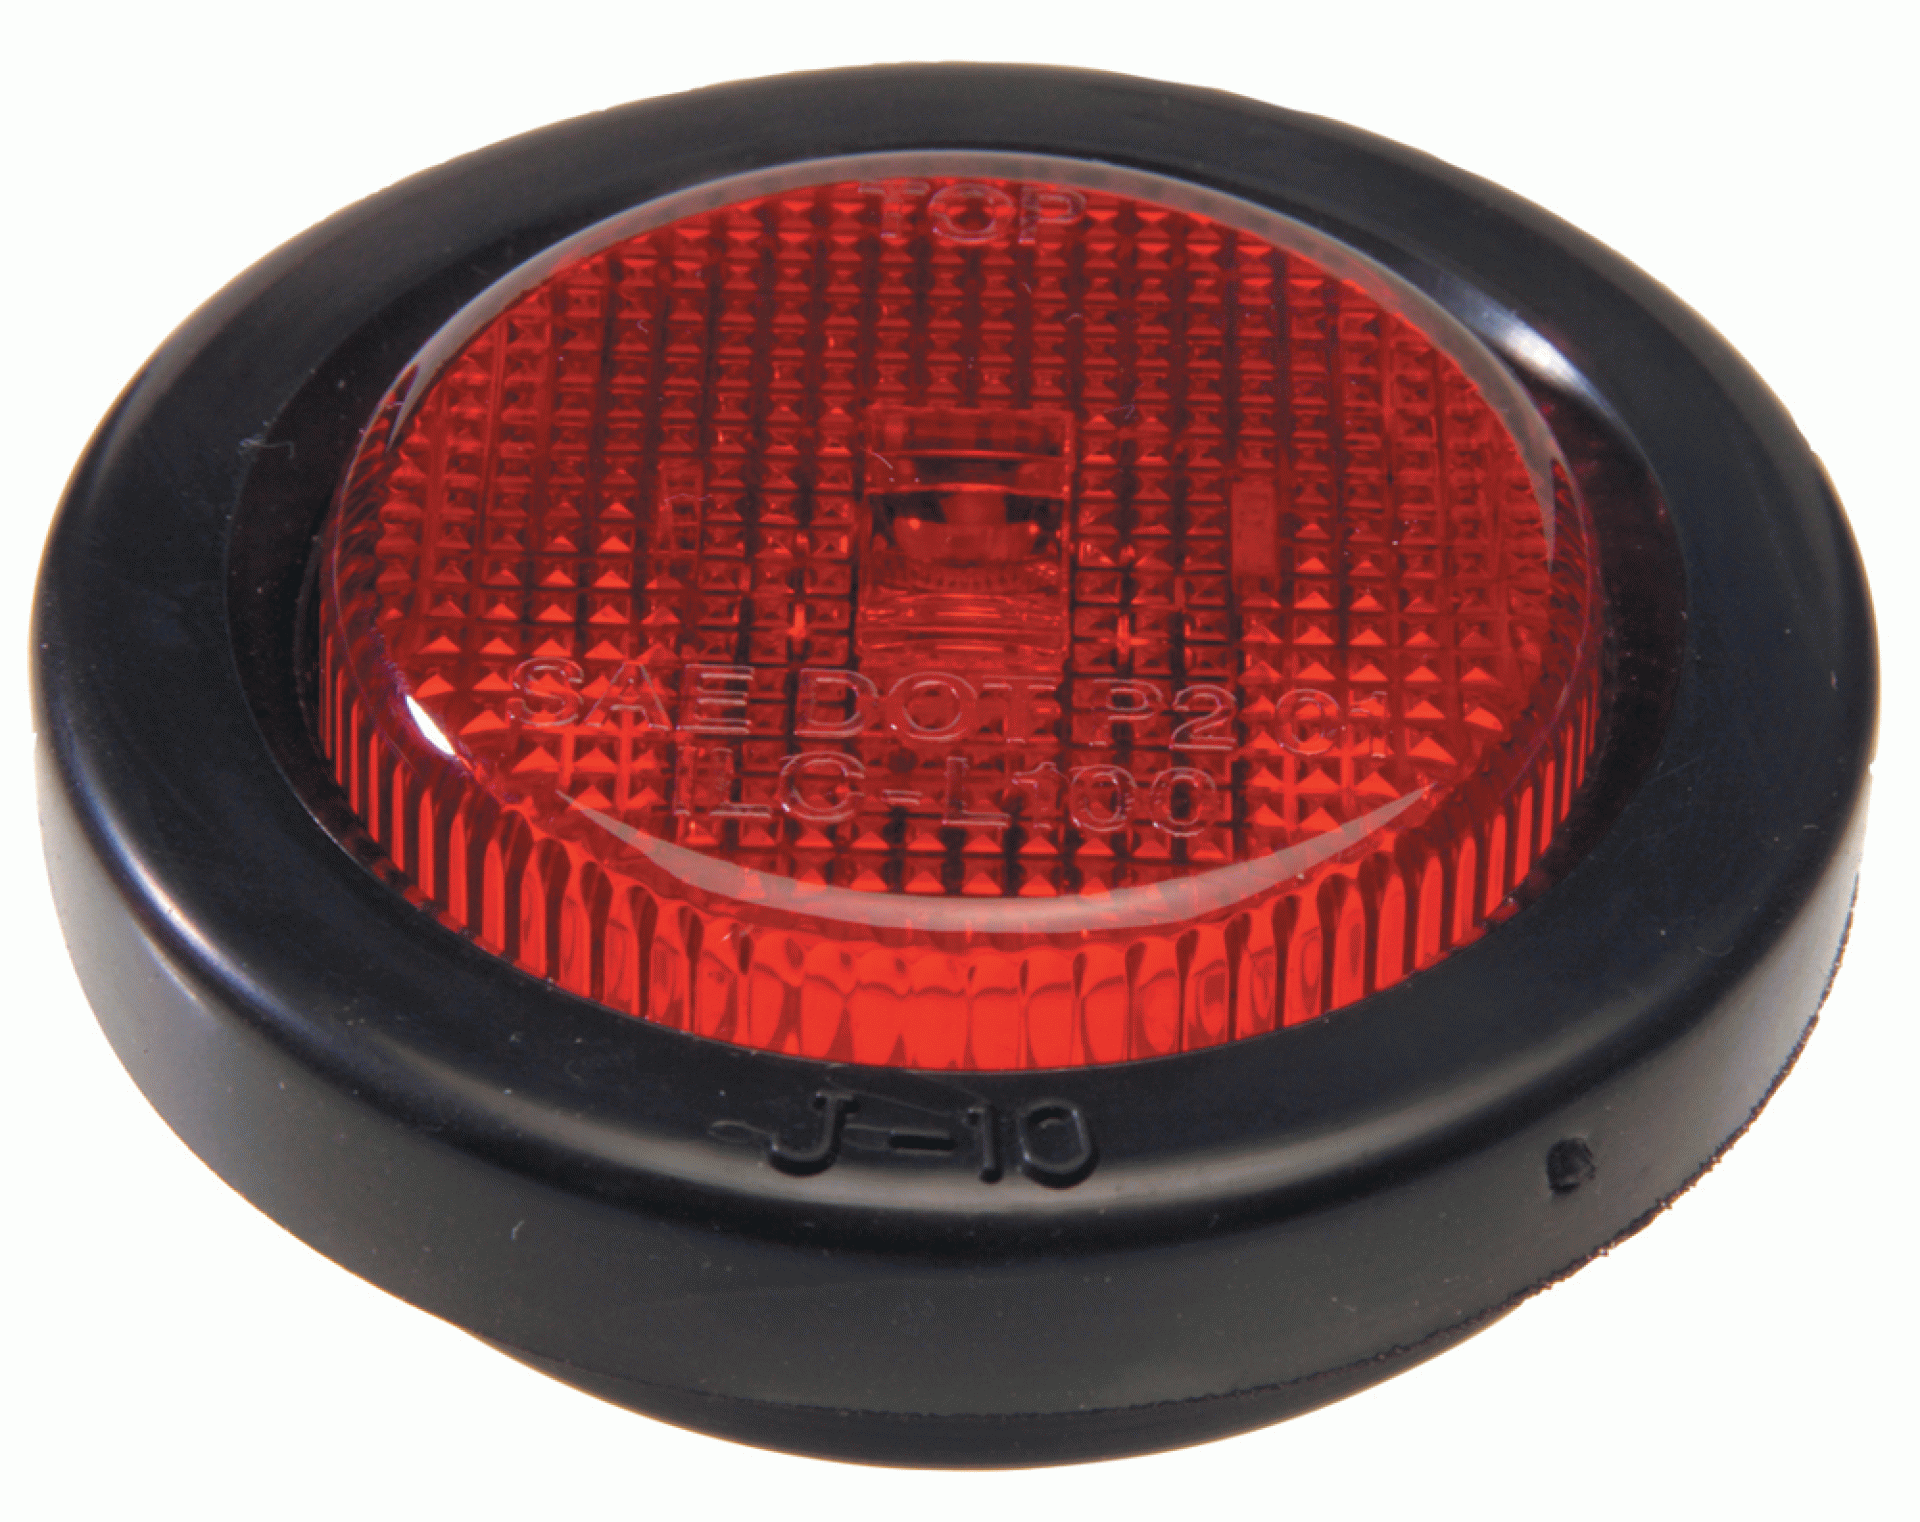 INNOVATIVE LIGHTING INC. | 210-4400-7 | LED SIDE MARKER LIGHT 2" ROUND W/ GROMMET - RED 1 LED